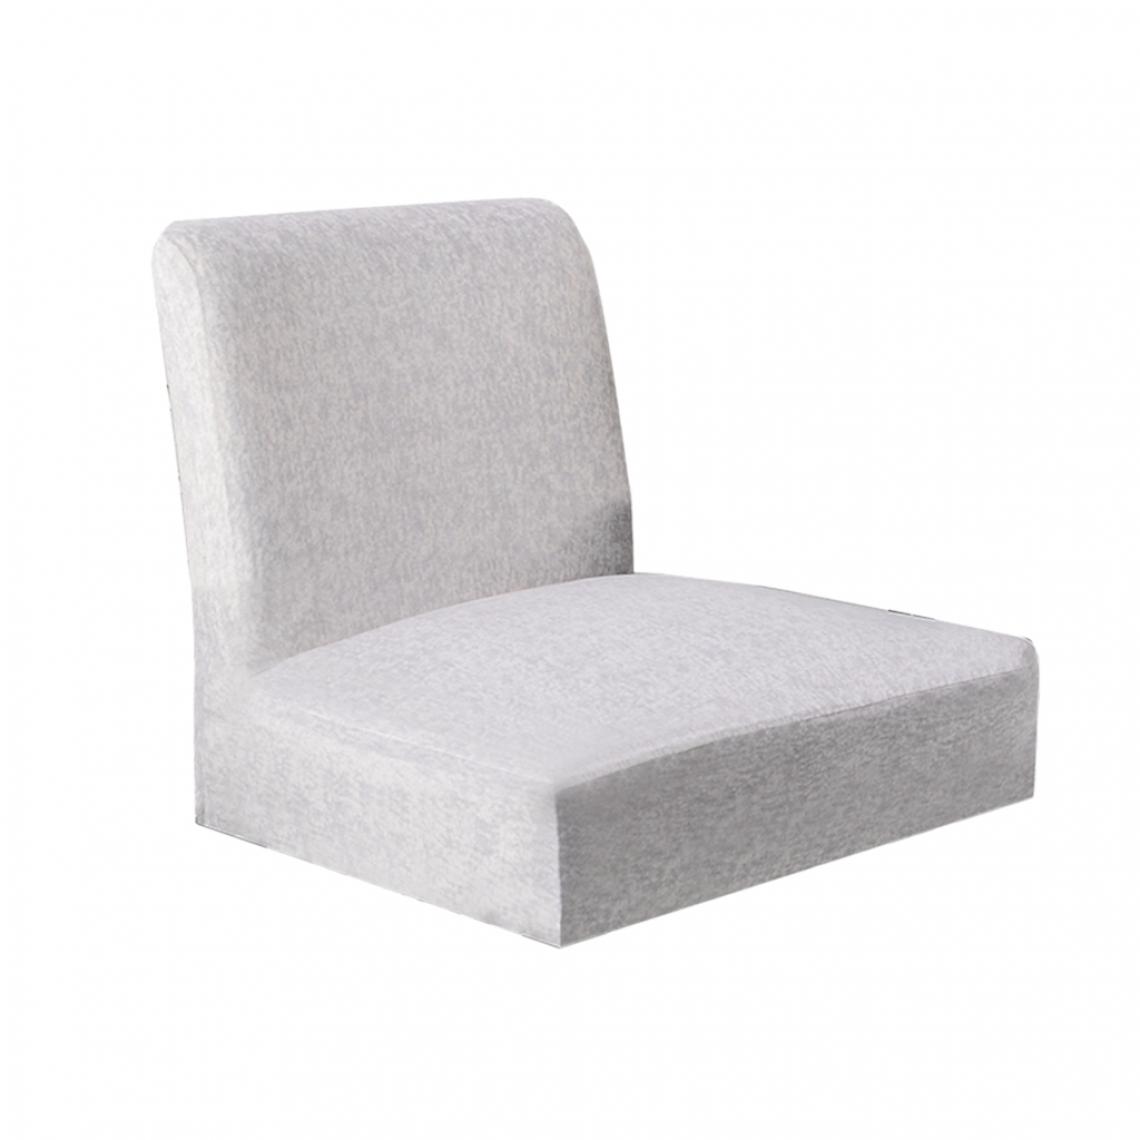 marque generique - housse de chaise extensible couvre-siège pour chaise courte à dossier court tabouret de bar chaise brune - Tiroir coulissant